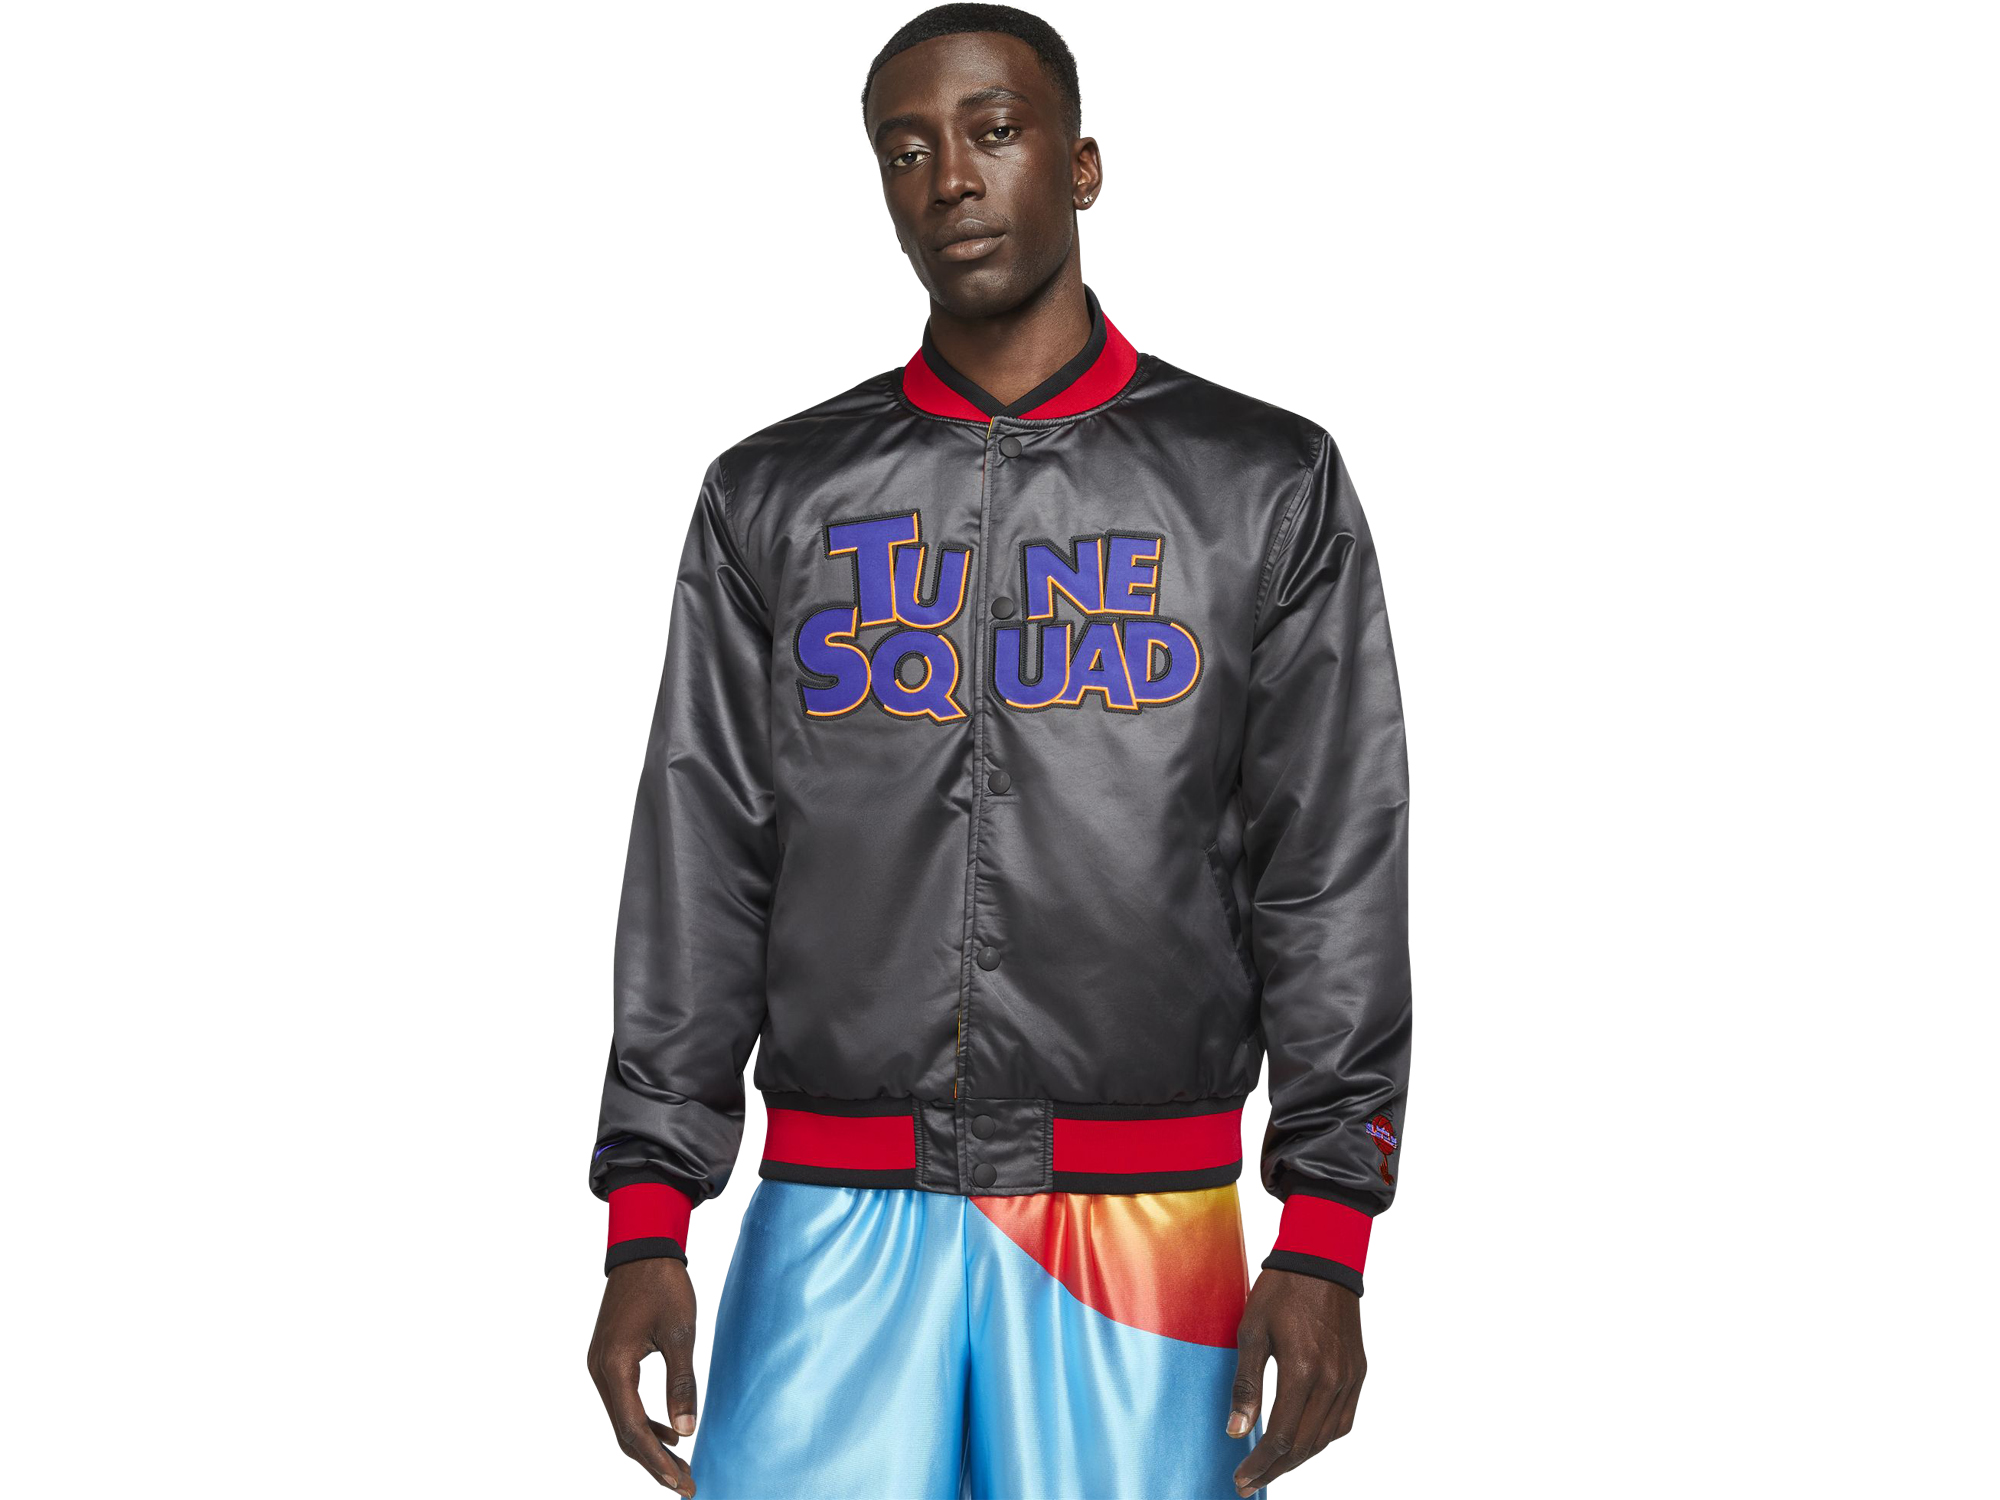 Nike Lebron x Space Jam "Tune Squad" Jacket